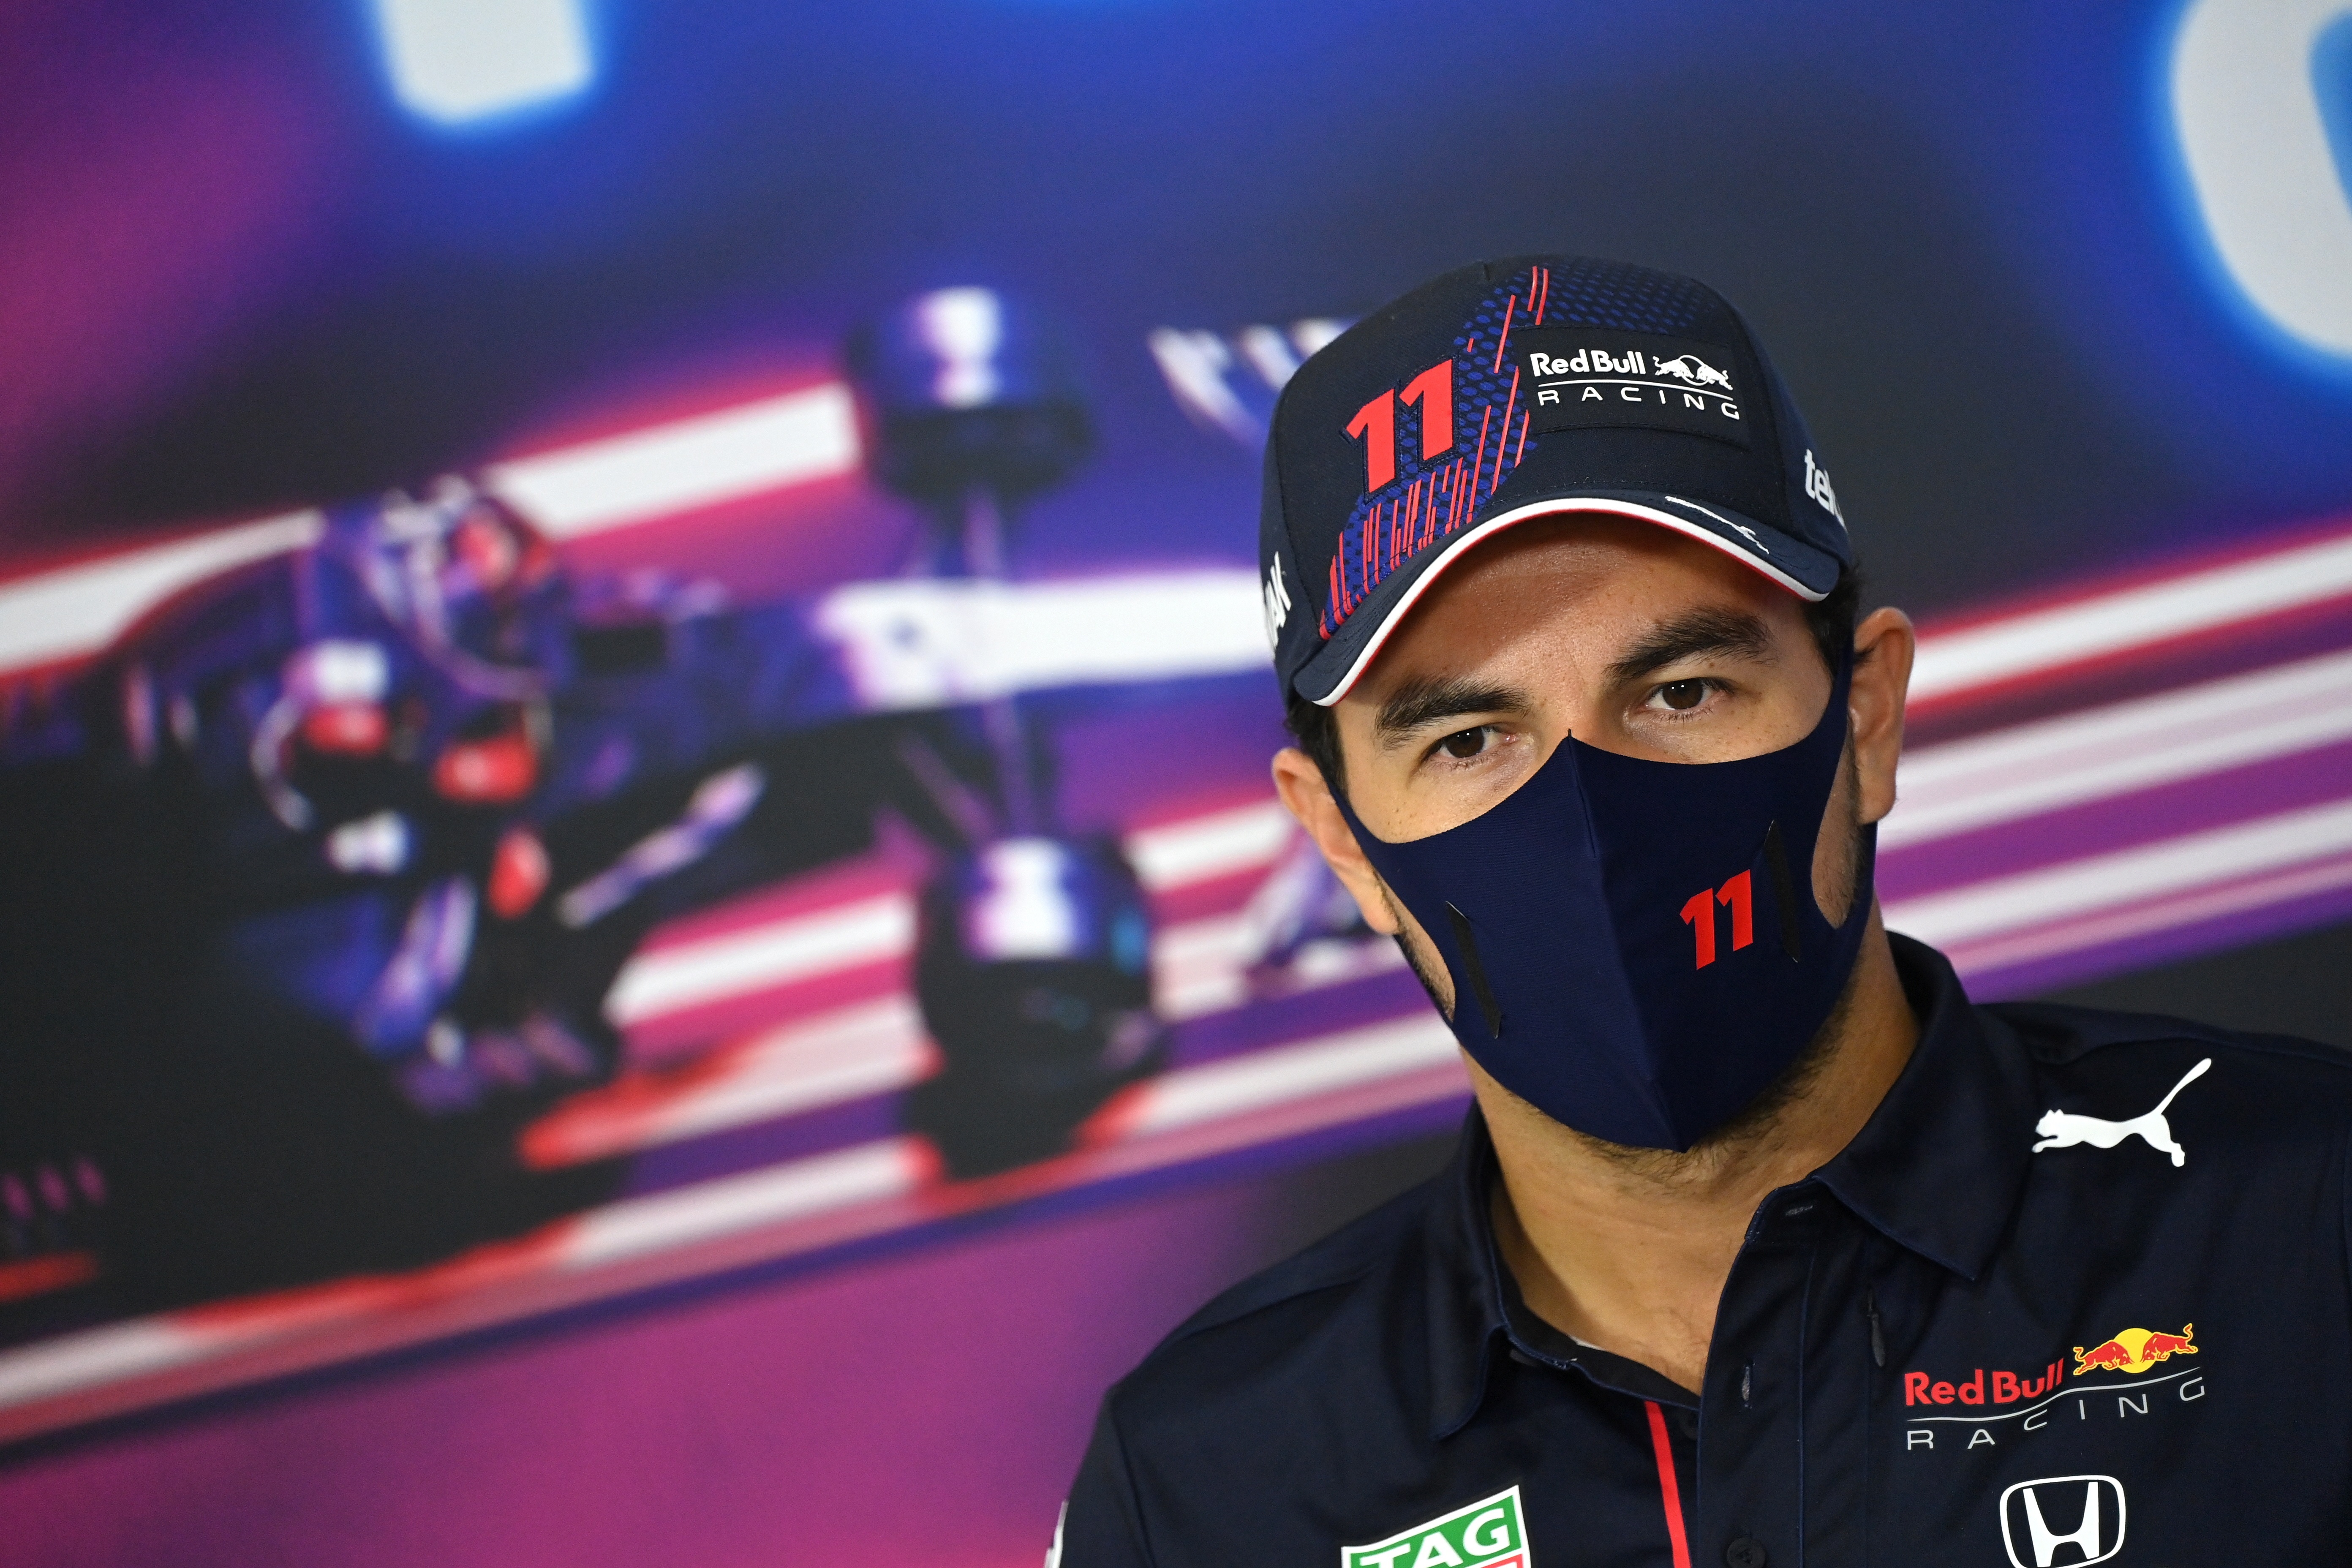 “Estoy disfrutando mucho al llegar al final de la temporada”: Checo Pérez previo al GP de Arabia Saudita